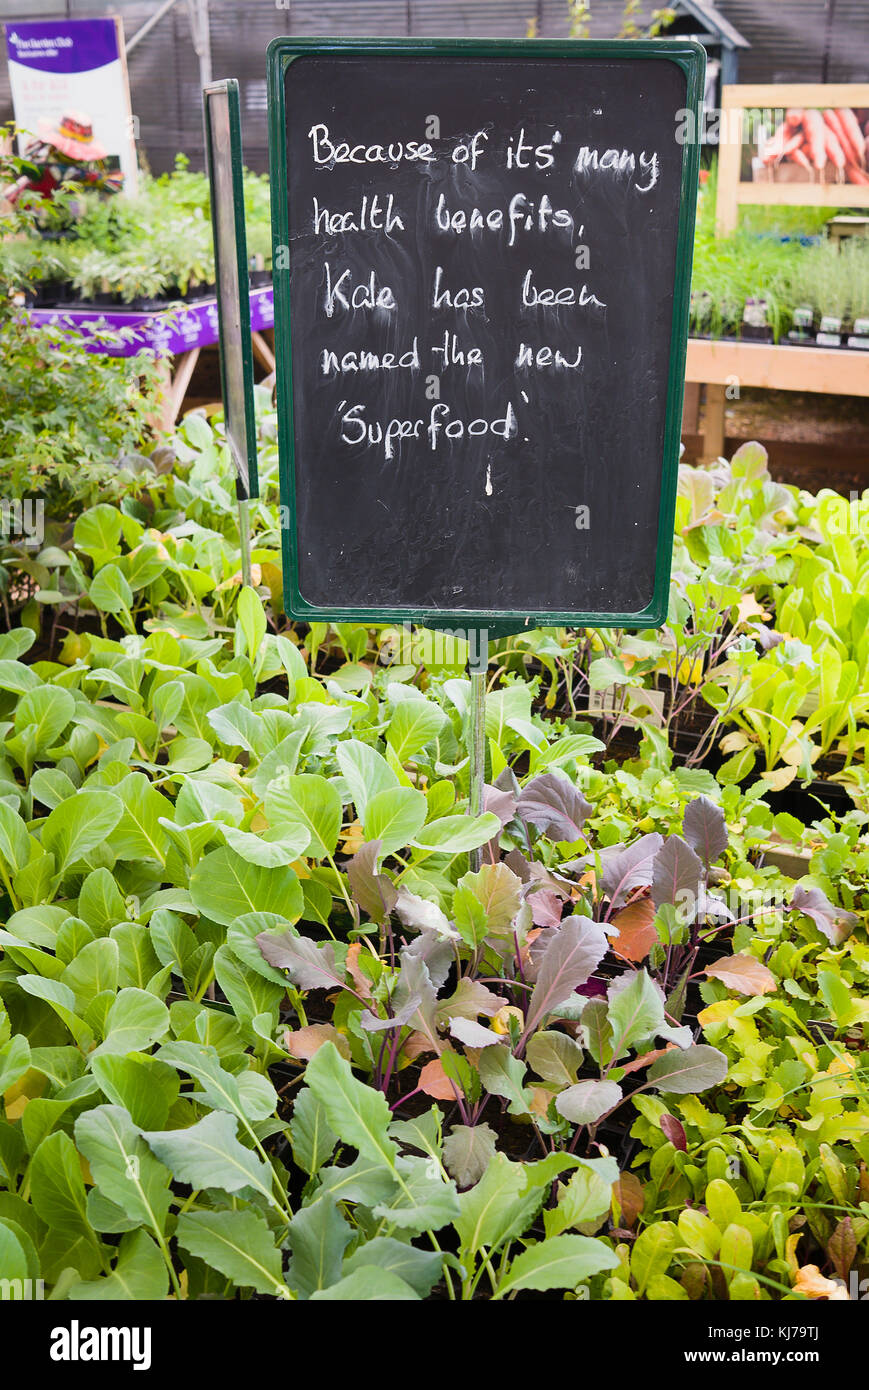 Verde giovane piante vegetali per la vendita di auto-selezione con una comunicazione persuasiva inneggiando la salute delle virtù di Kale come una casa coltivati il cibo nel Regno Unito Foto Stock